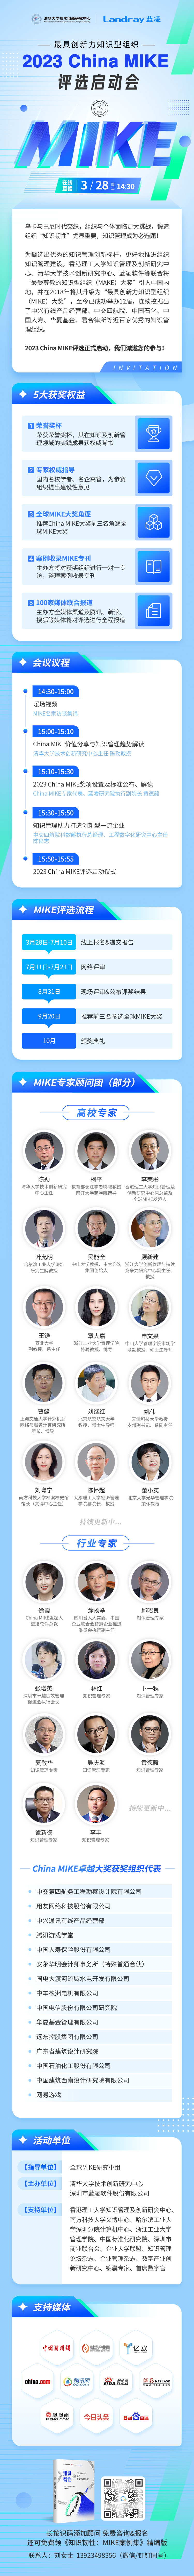 免费报名！3月28日，2023 China MIKE评选启动会开幕